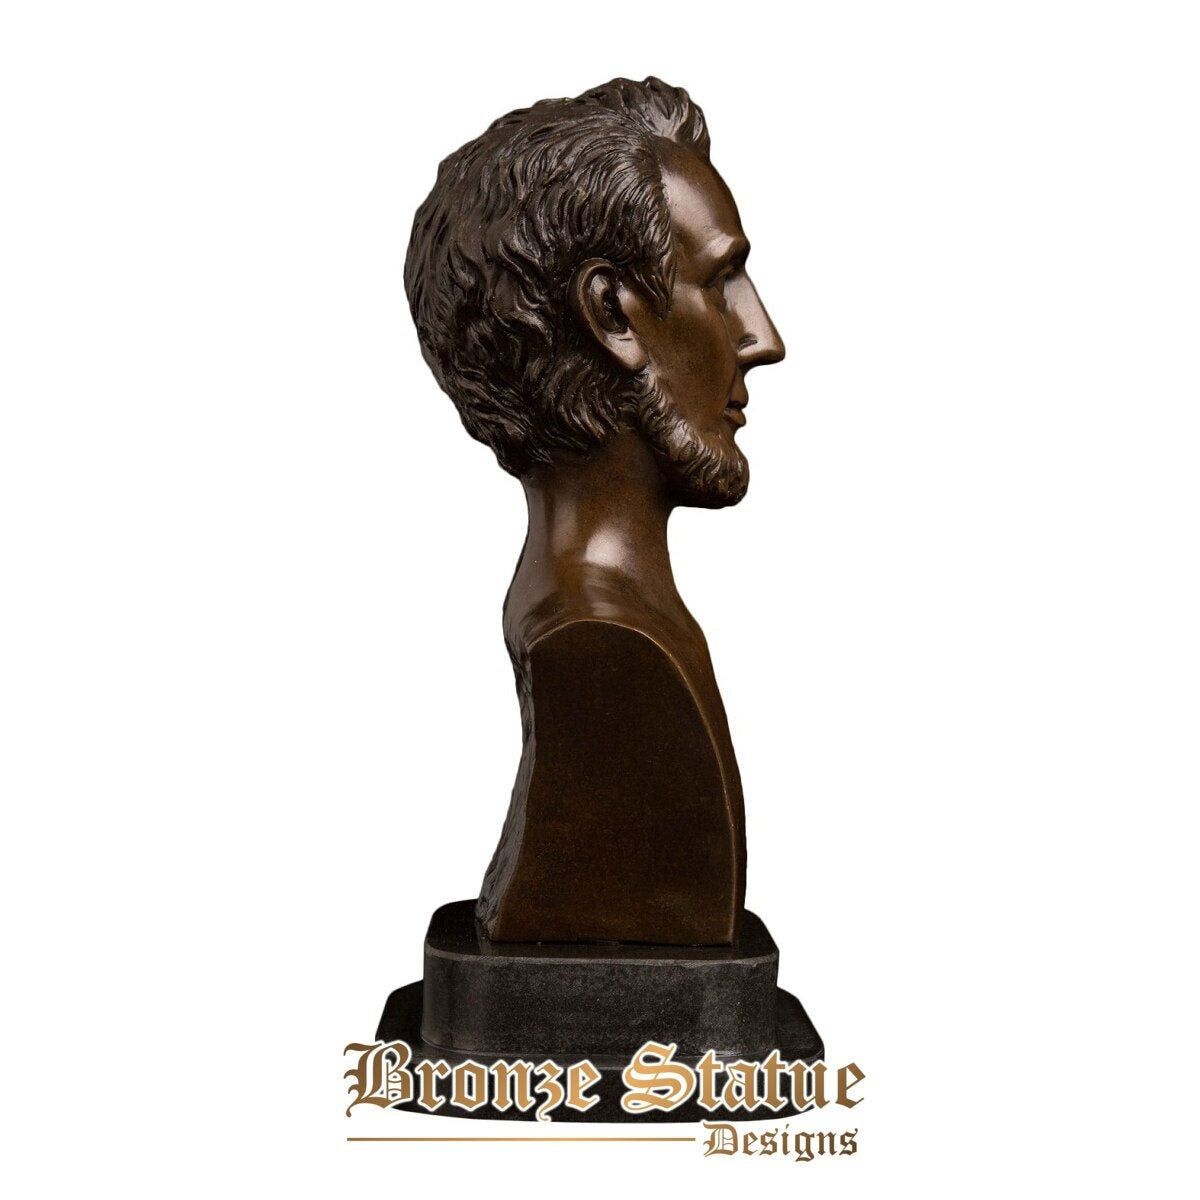 Famous lincoln president sculpture bronze man bust bronze statue souvenirs collectibles decoration